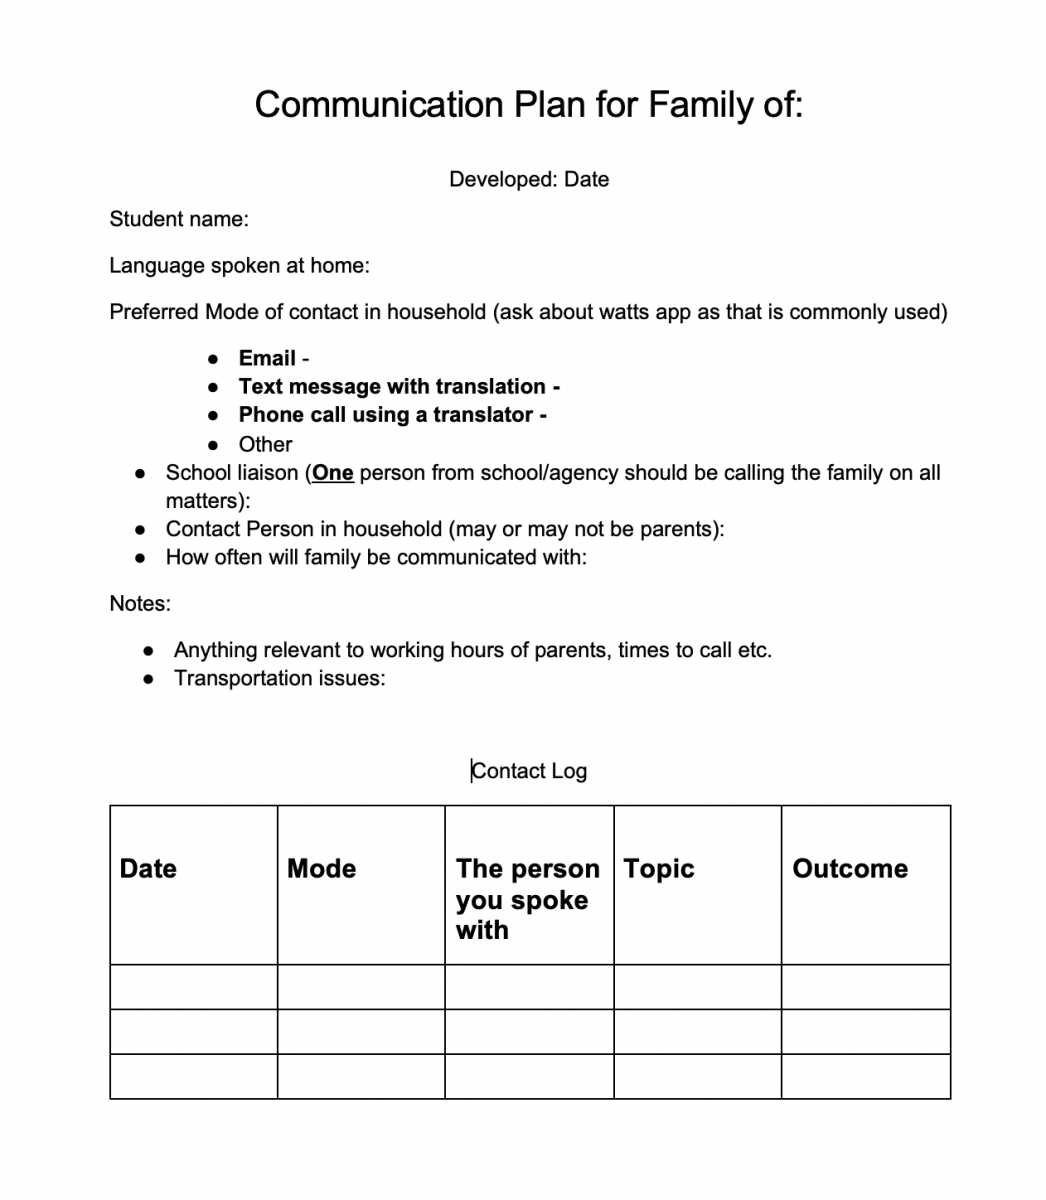 Sample Communication Plan